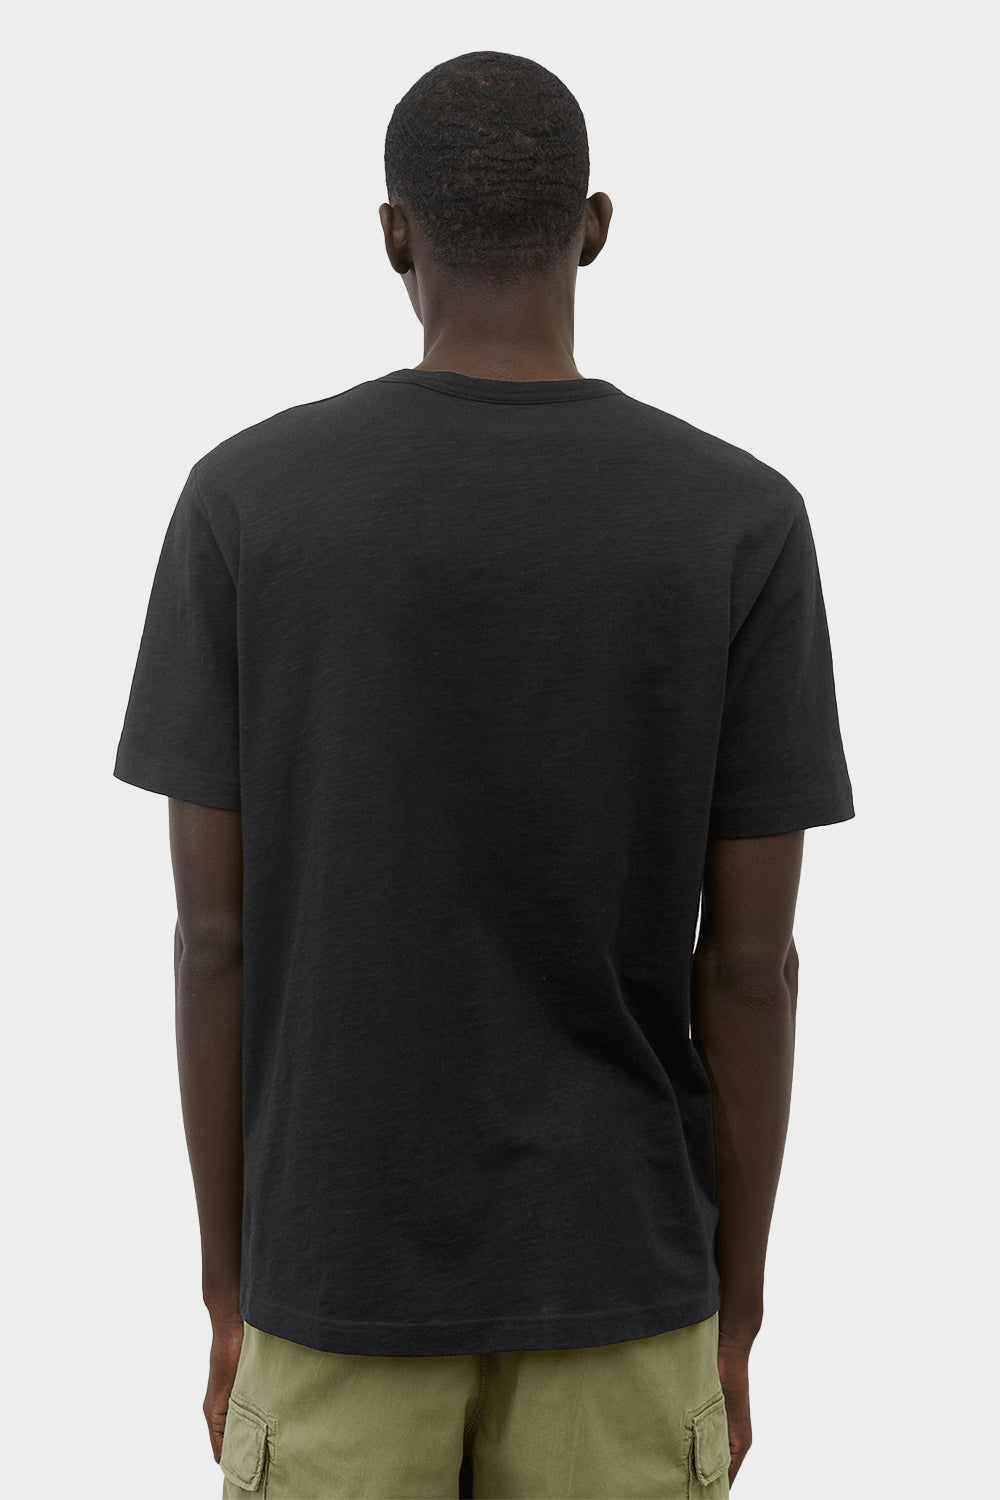 חולצה לגברים בצבע שחור MARC O POLO MARC O'POLO Vendome online | ונדום .